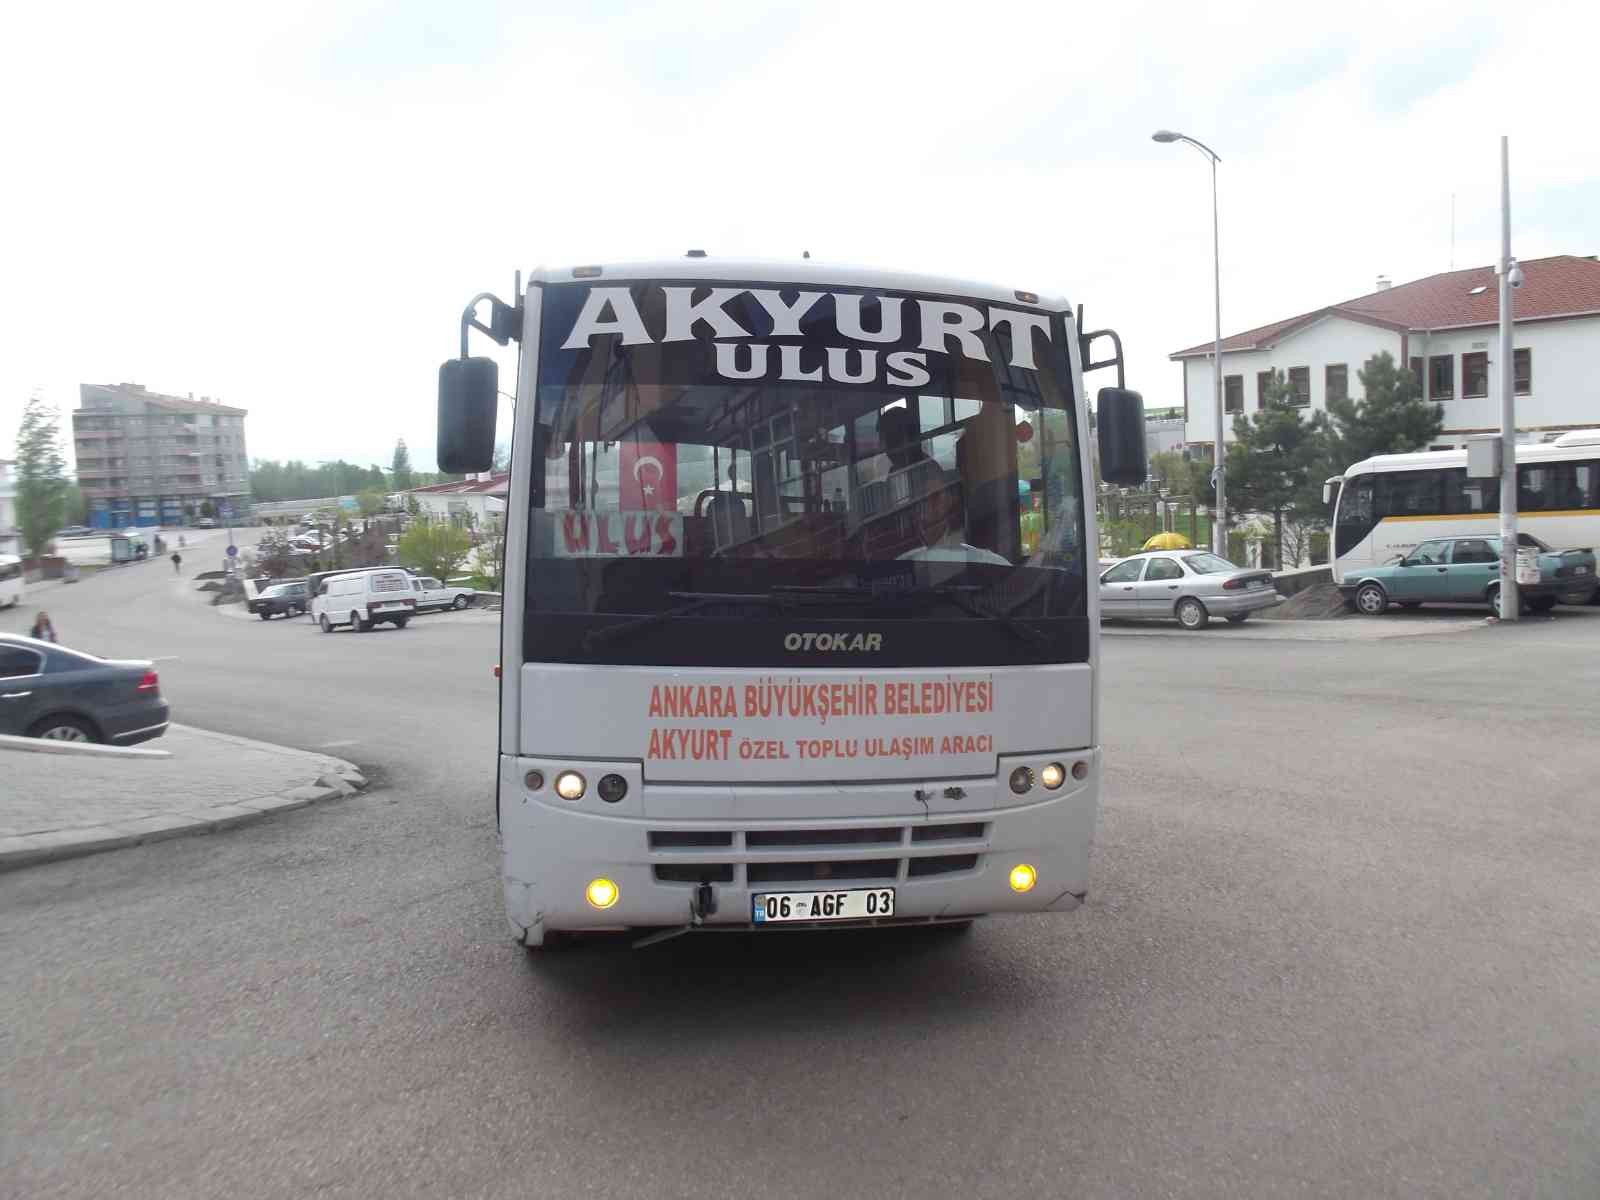 Akyurt yolcu taşıma otobüslerinde ‘sivil’ denetim #ankara